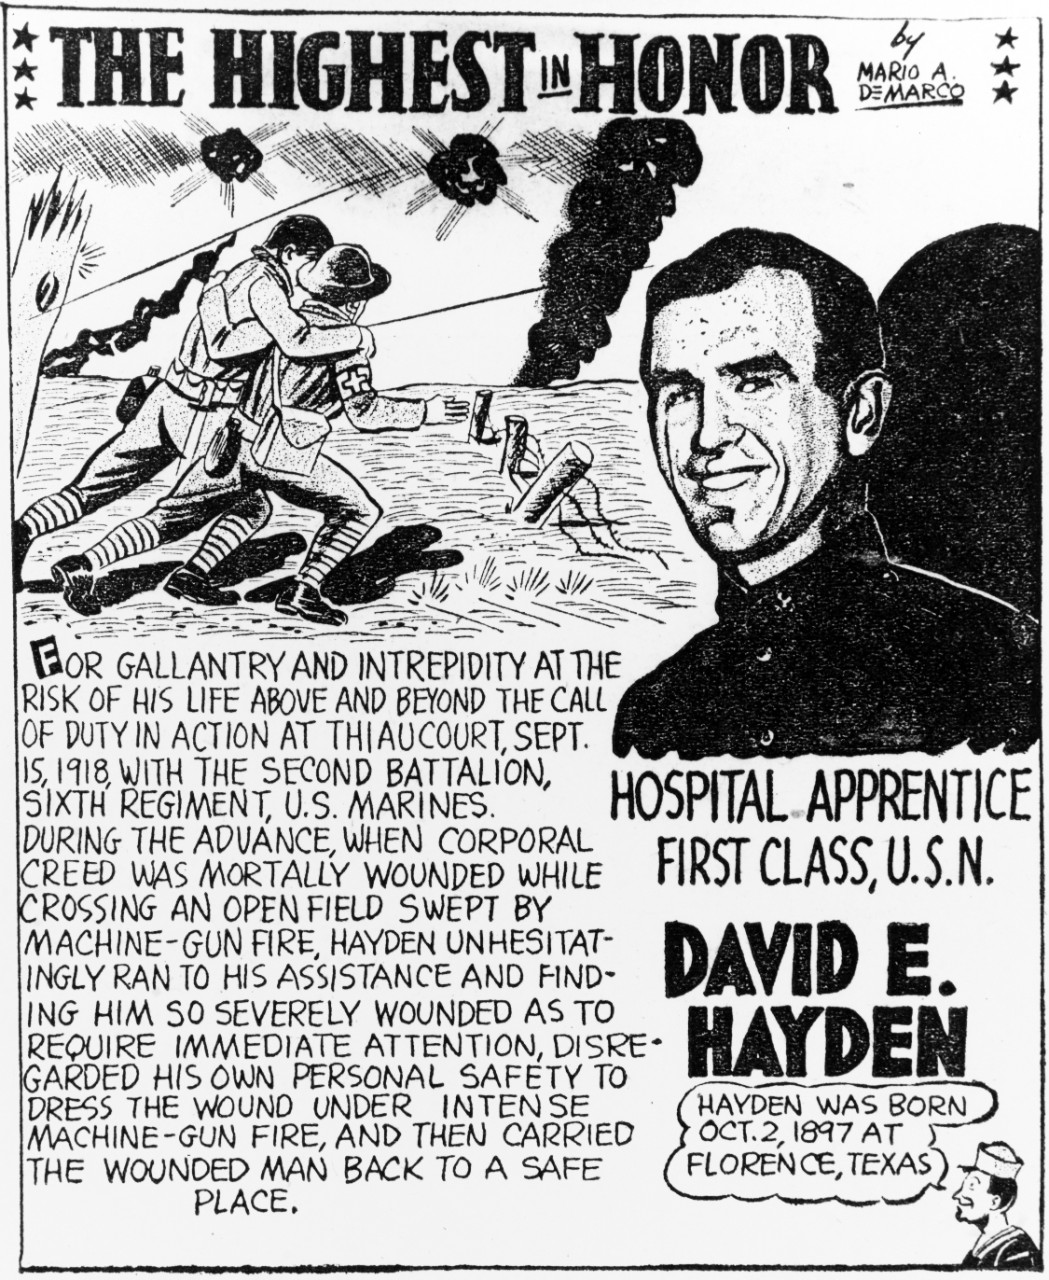 David E. Hayden, Hospital Apprentice First Class, USN